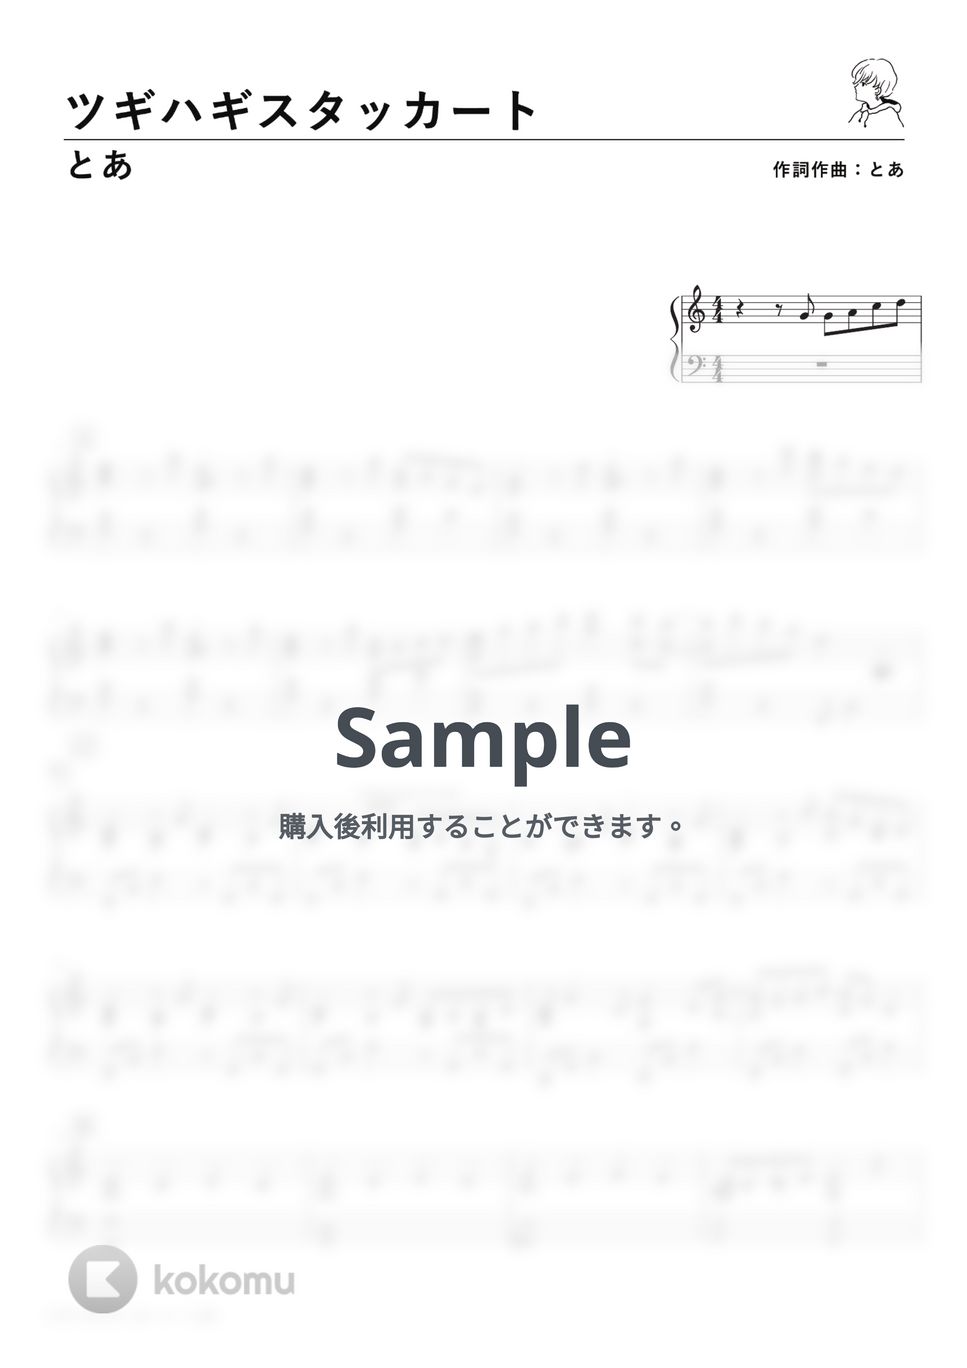 とあ - ツギハギスタッカート (PianoSolo) by 深根 / Fukane